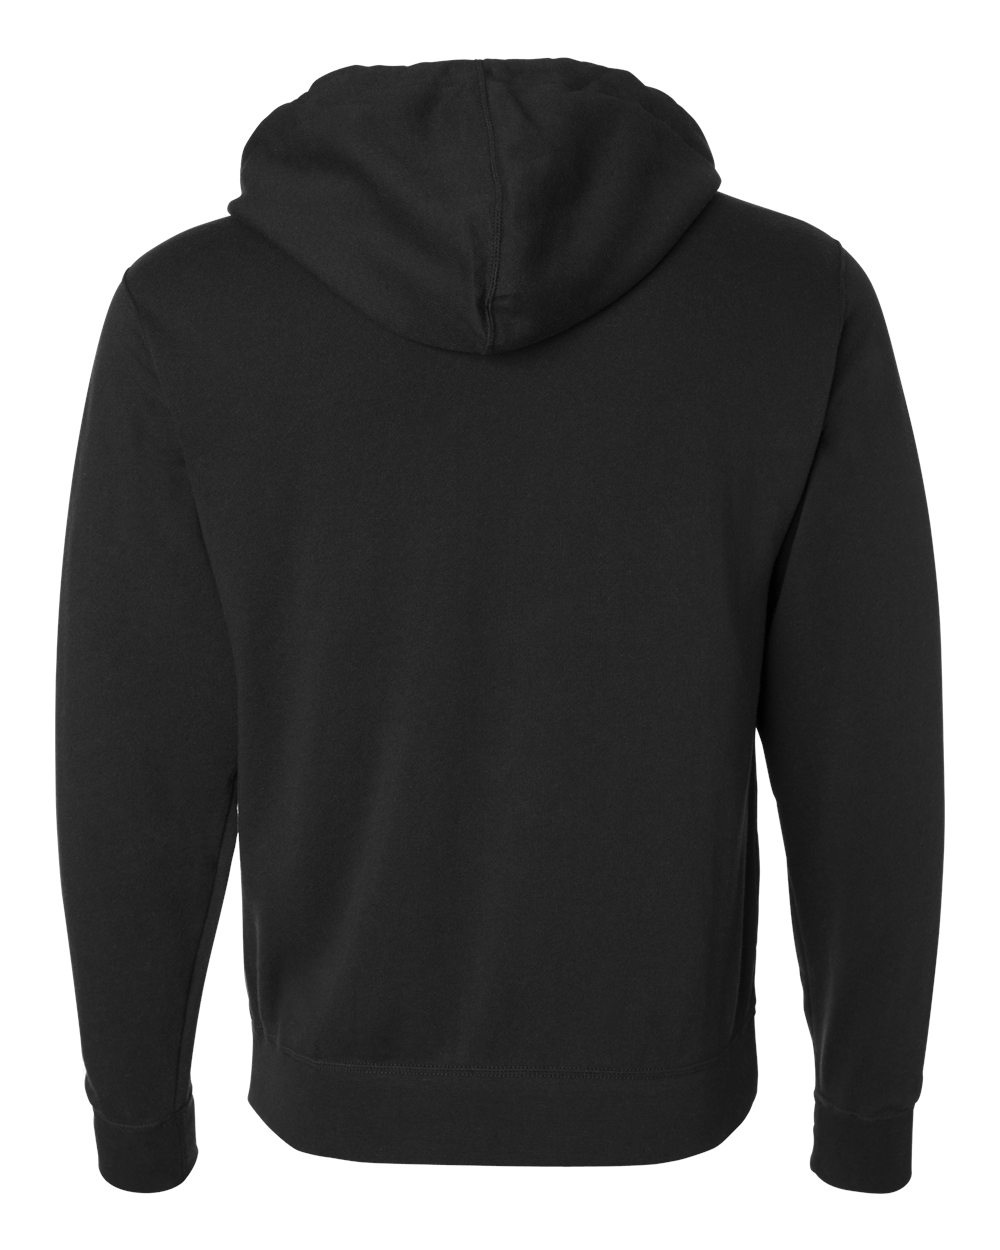 Independent Trading AFX4000 Unisex Hooded Sweatshirt | JiffyShirts